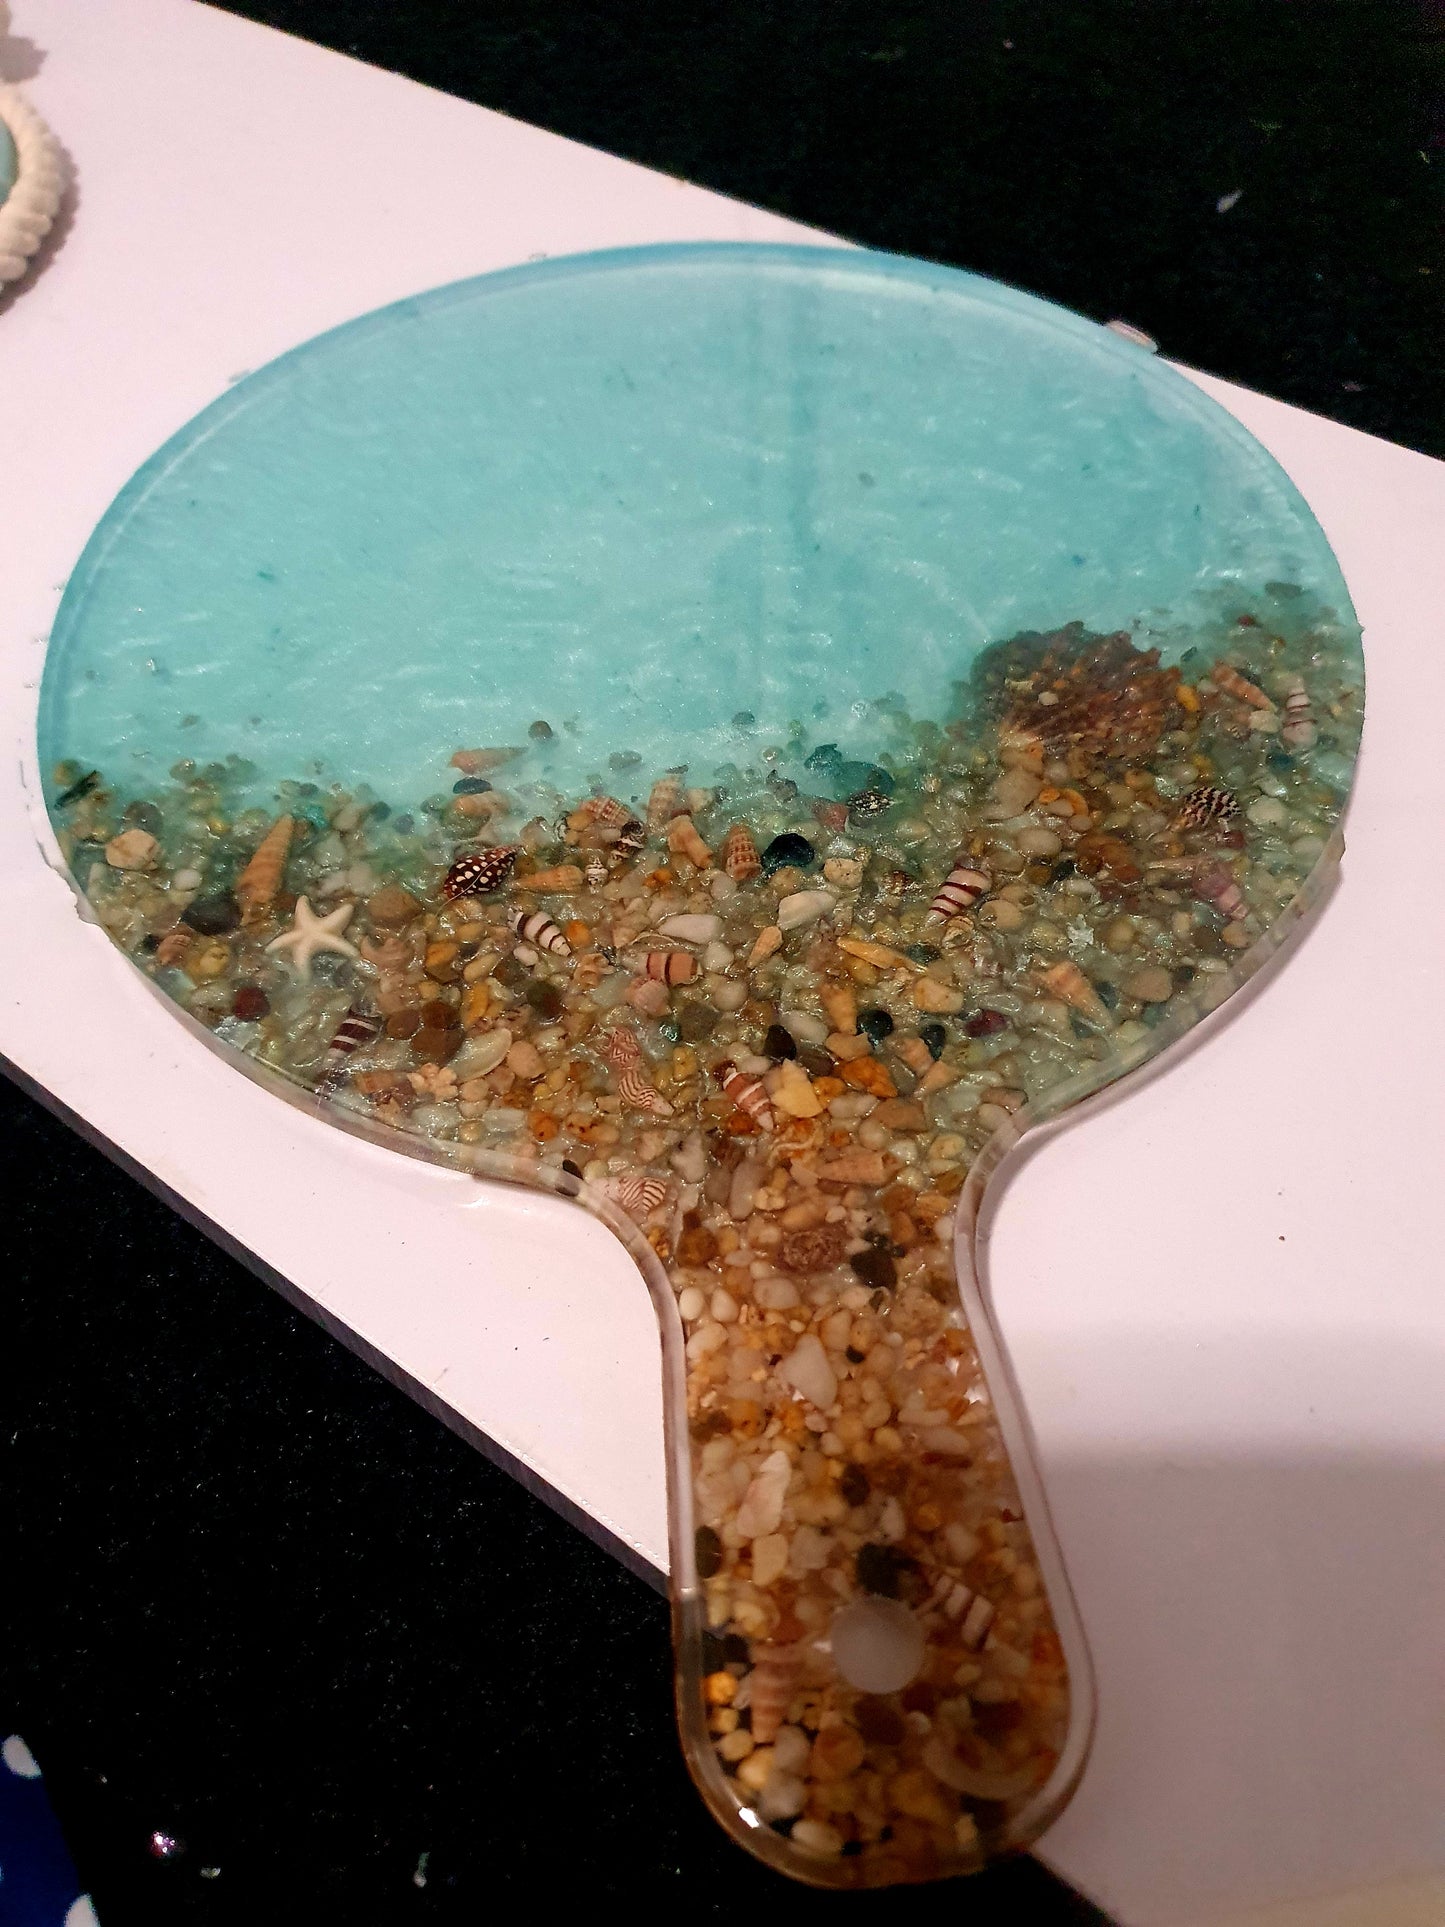 Unique translucent round seascape serving platter/ cheese board/ grazing board/ charcuterie board